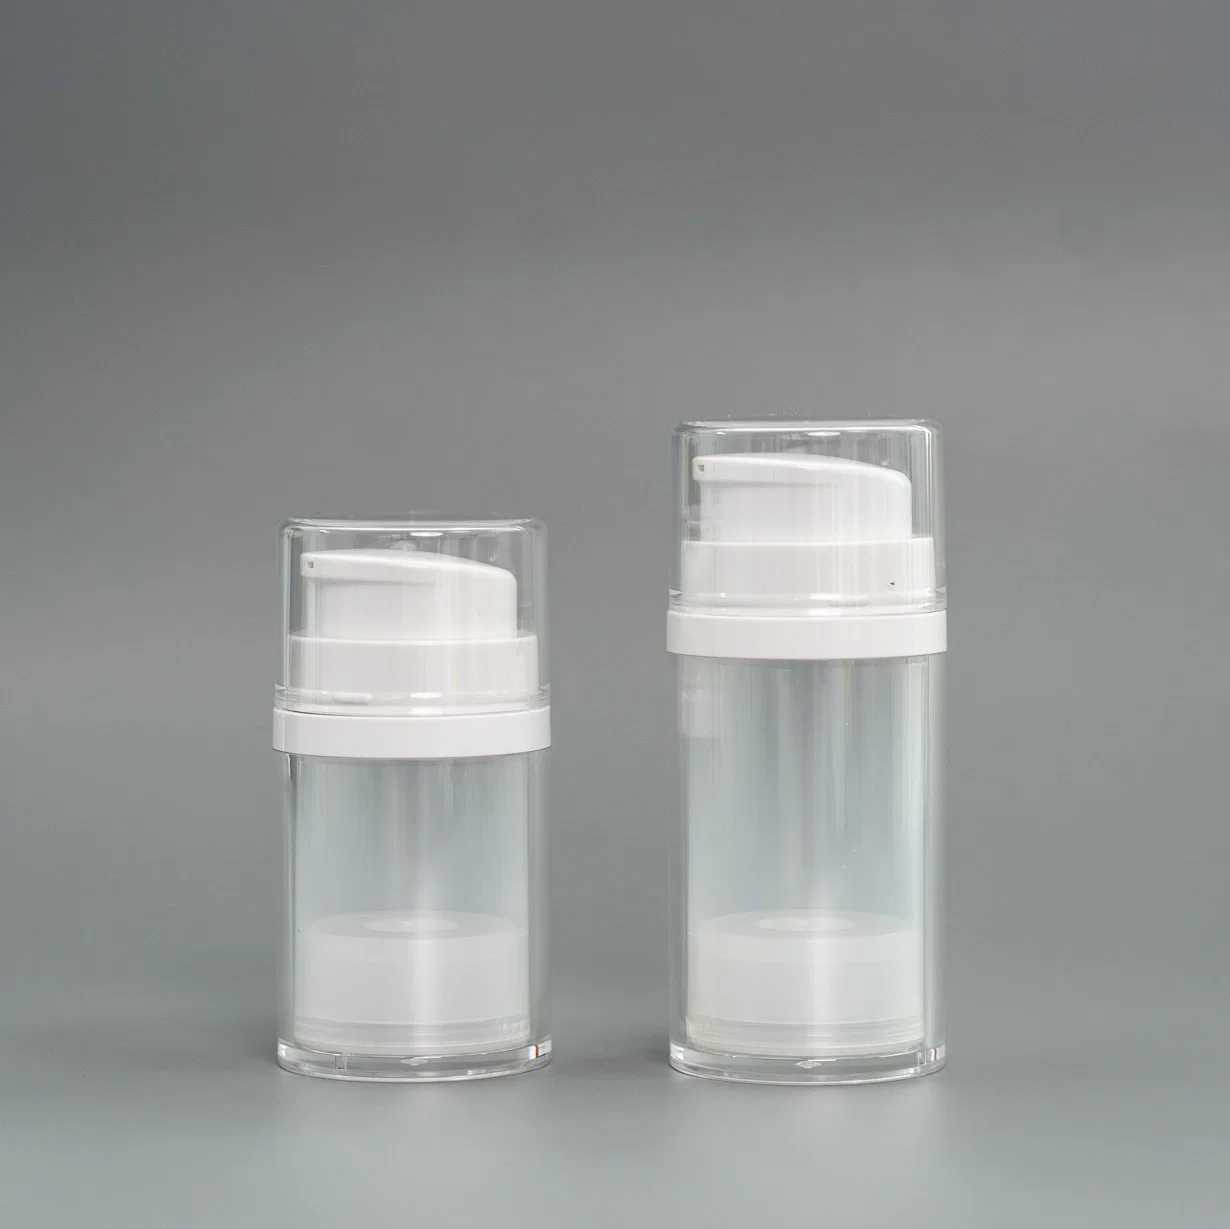 Bonitinha garrafa recipiente de soro 15ml de embalagens de plástico Frasco Sub 1oz frasco vazio de PP de dupla parede Material Reciclável Embalagem Cosméticos alteráveis